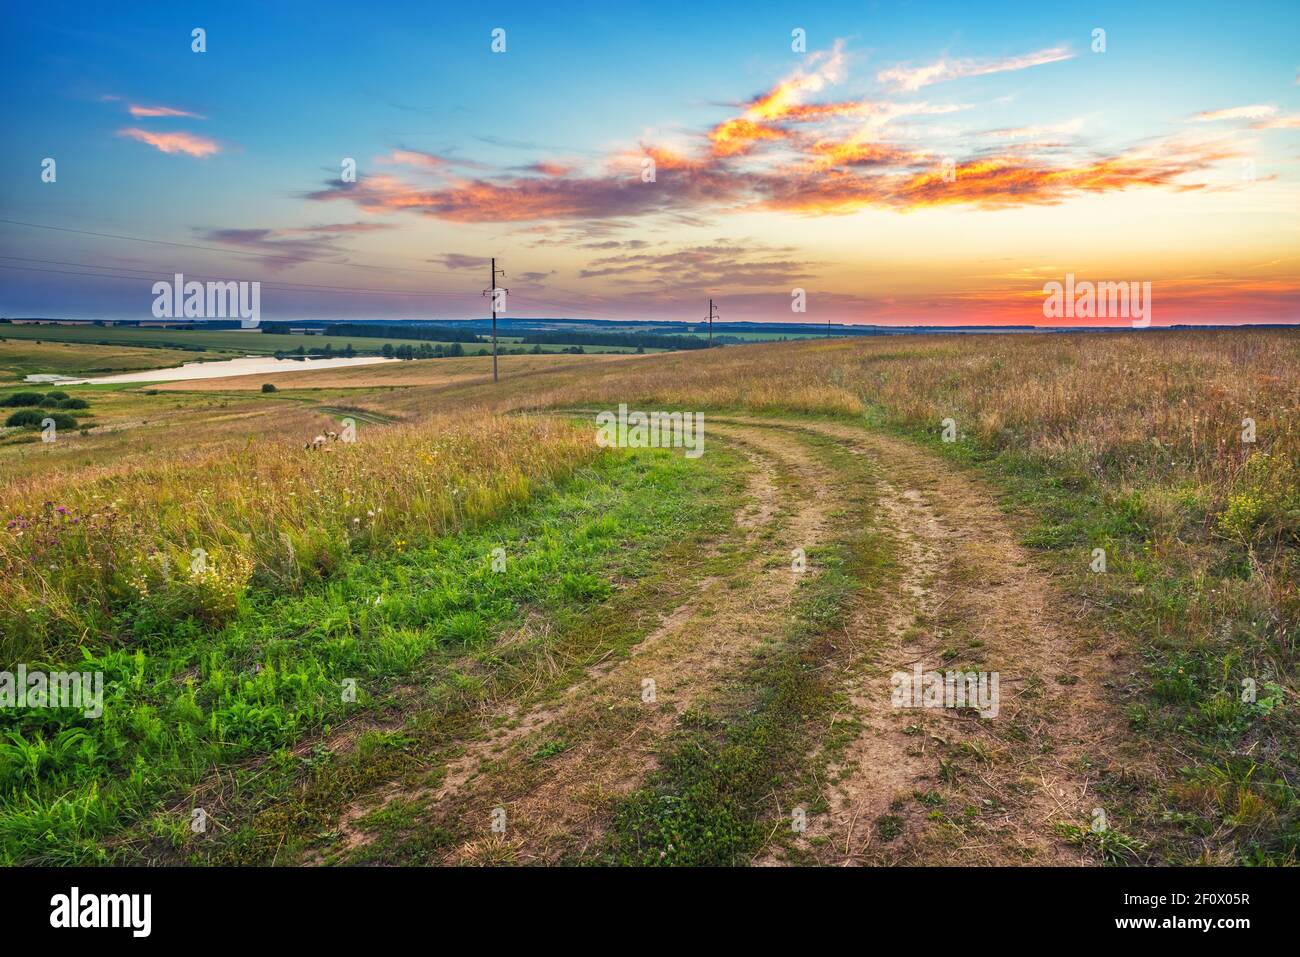 Paysage rural avec route terrestre et champ de blé dans une campagne au coucher du soleil d'été Banque D'Images